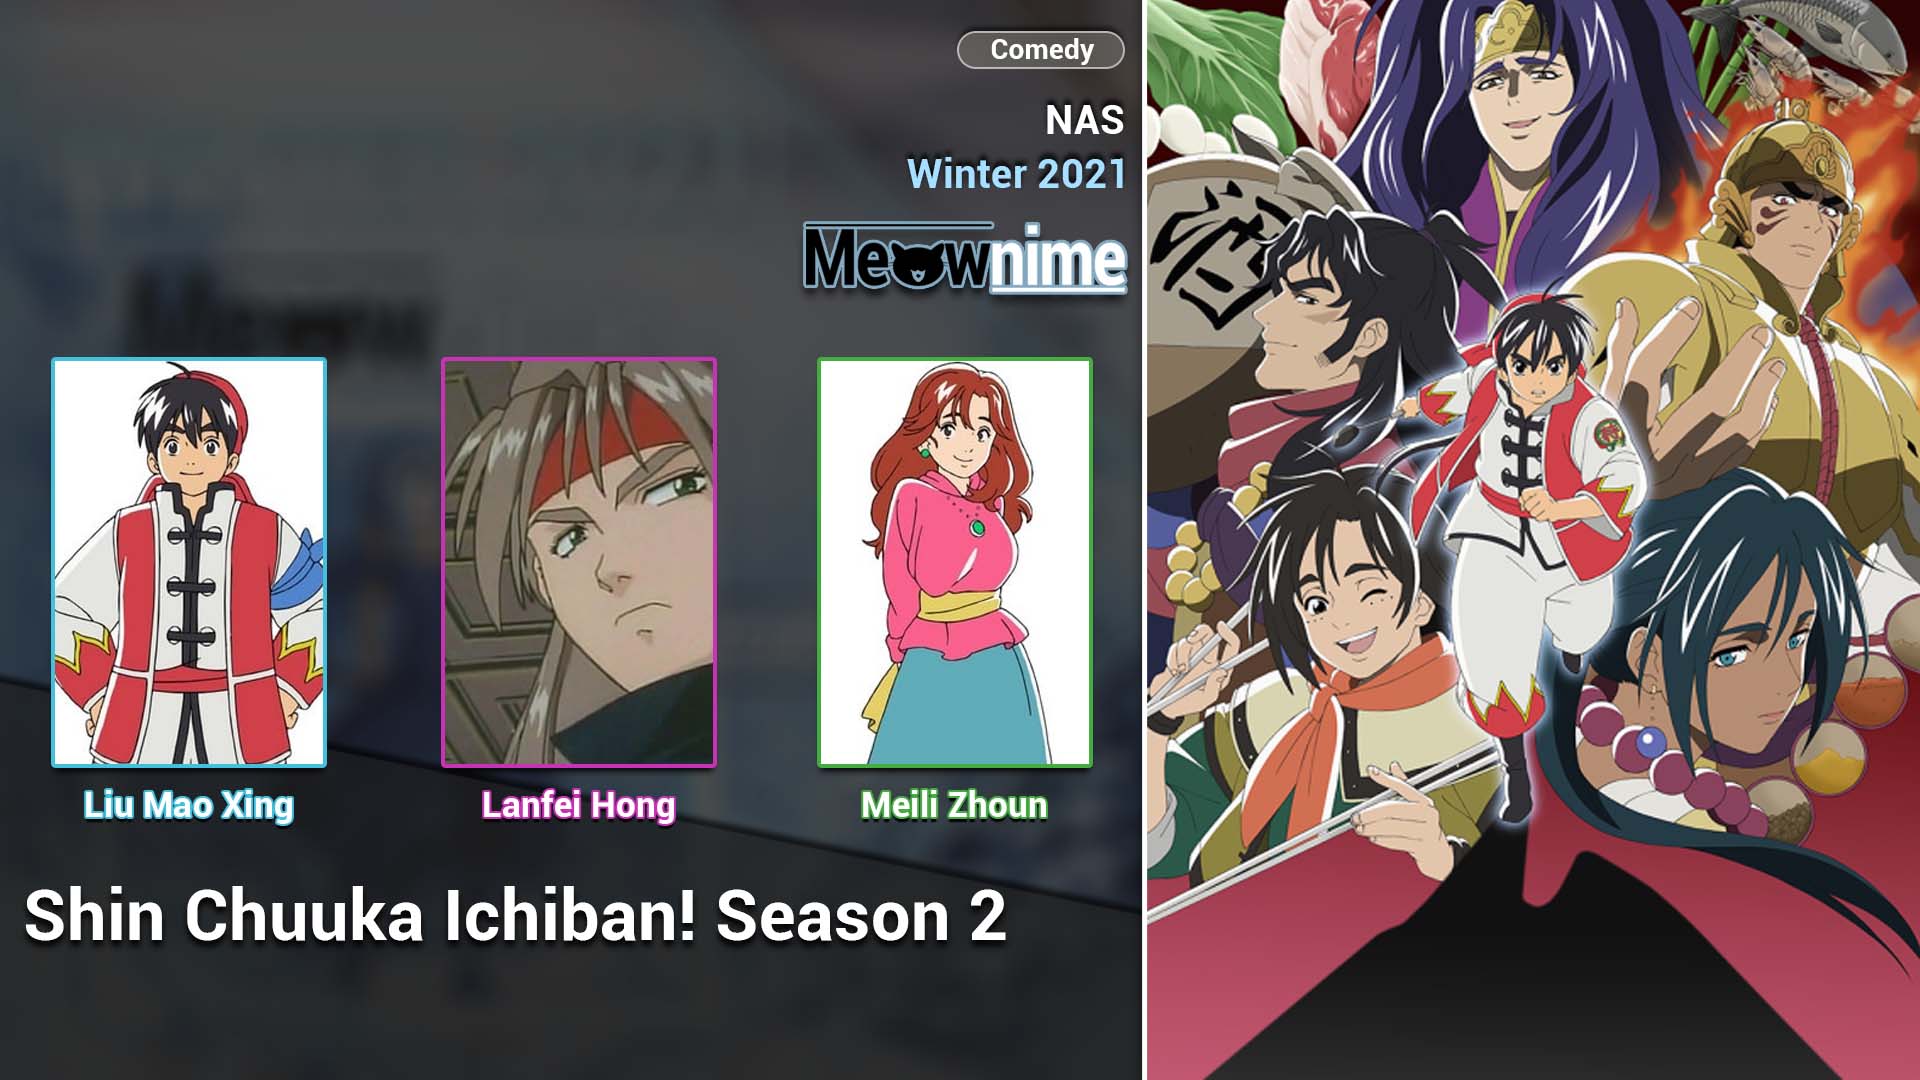 Shin Chuuka Ichiban! Season 2